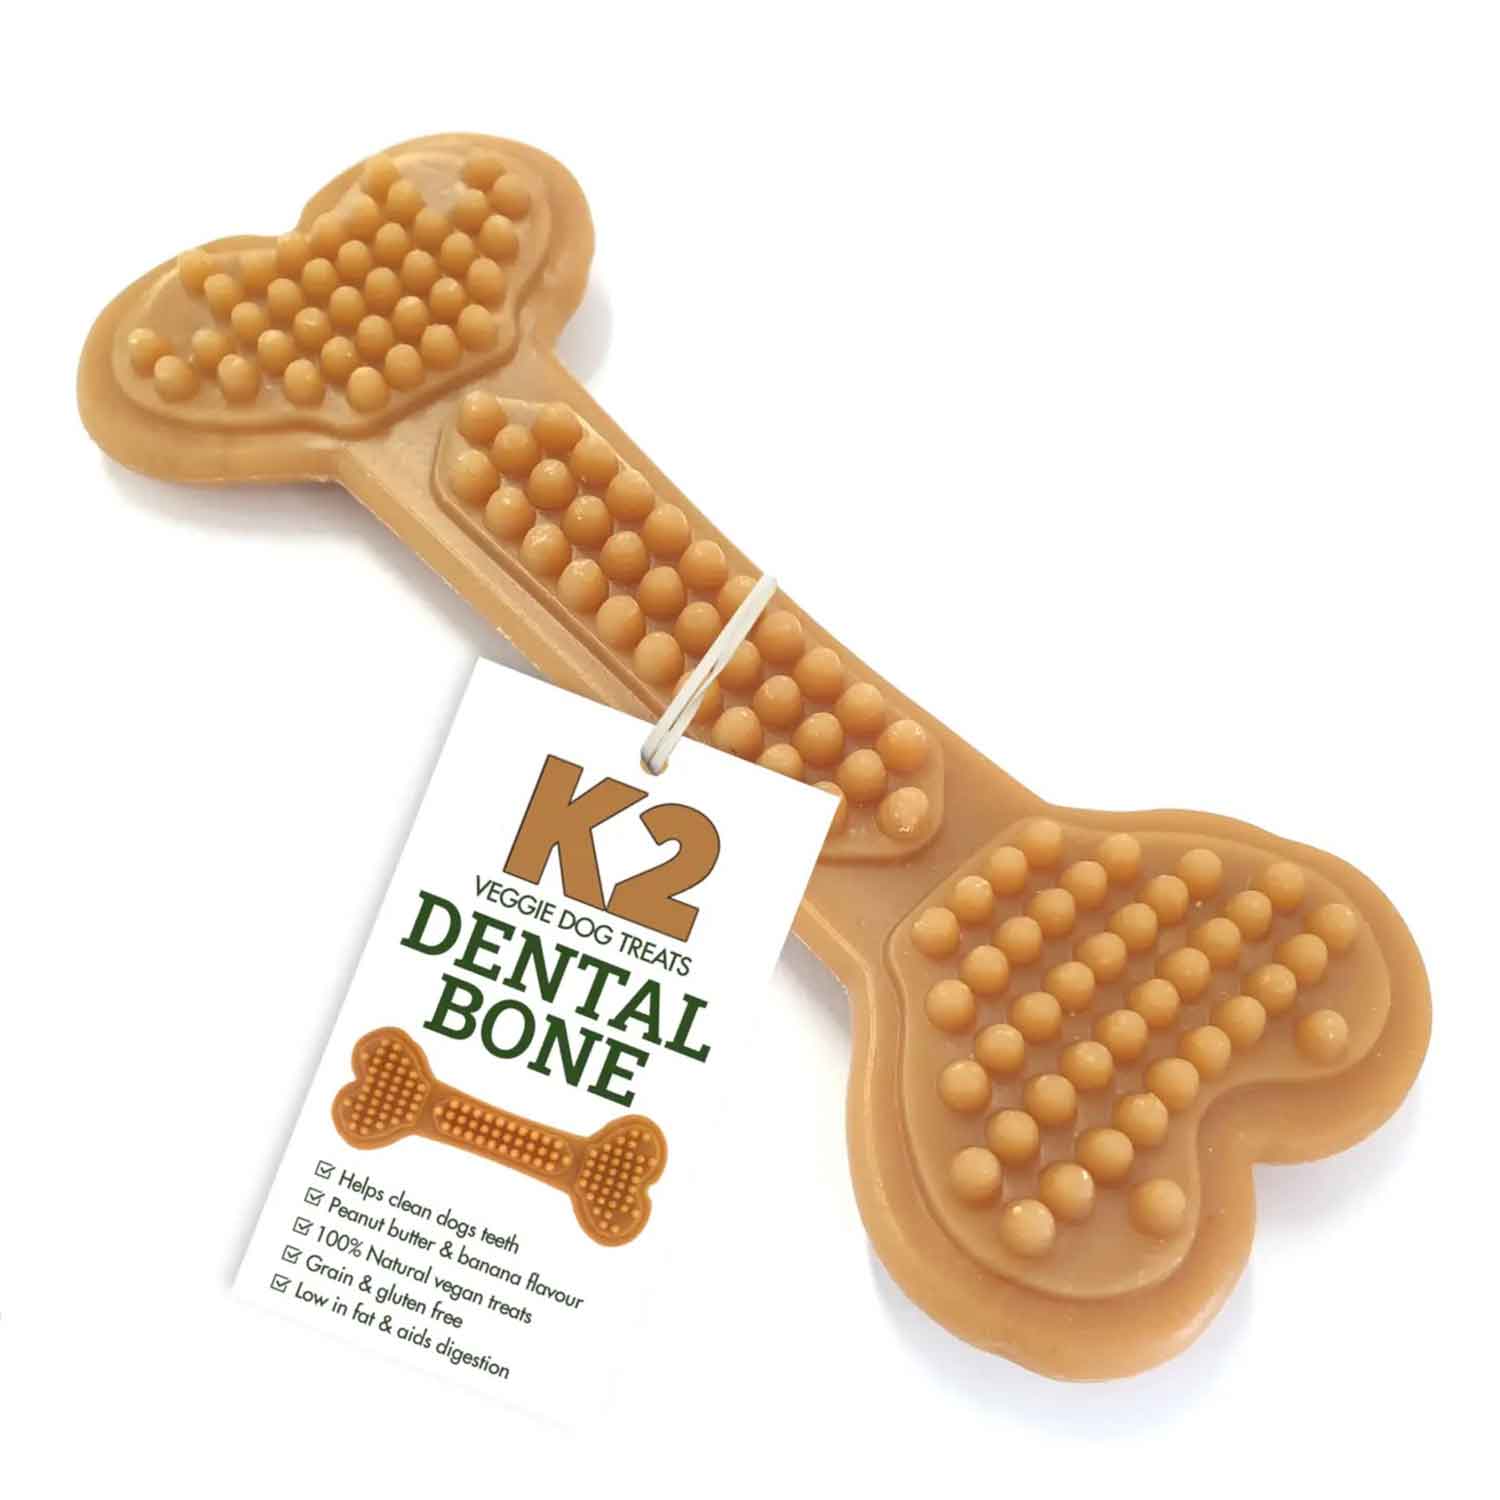 K2 Dental Bone for dogs peanut butter banana